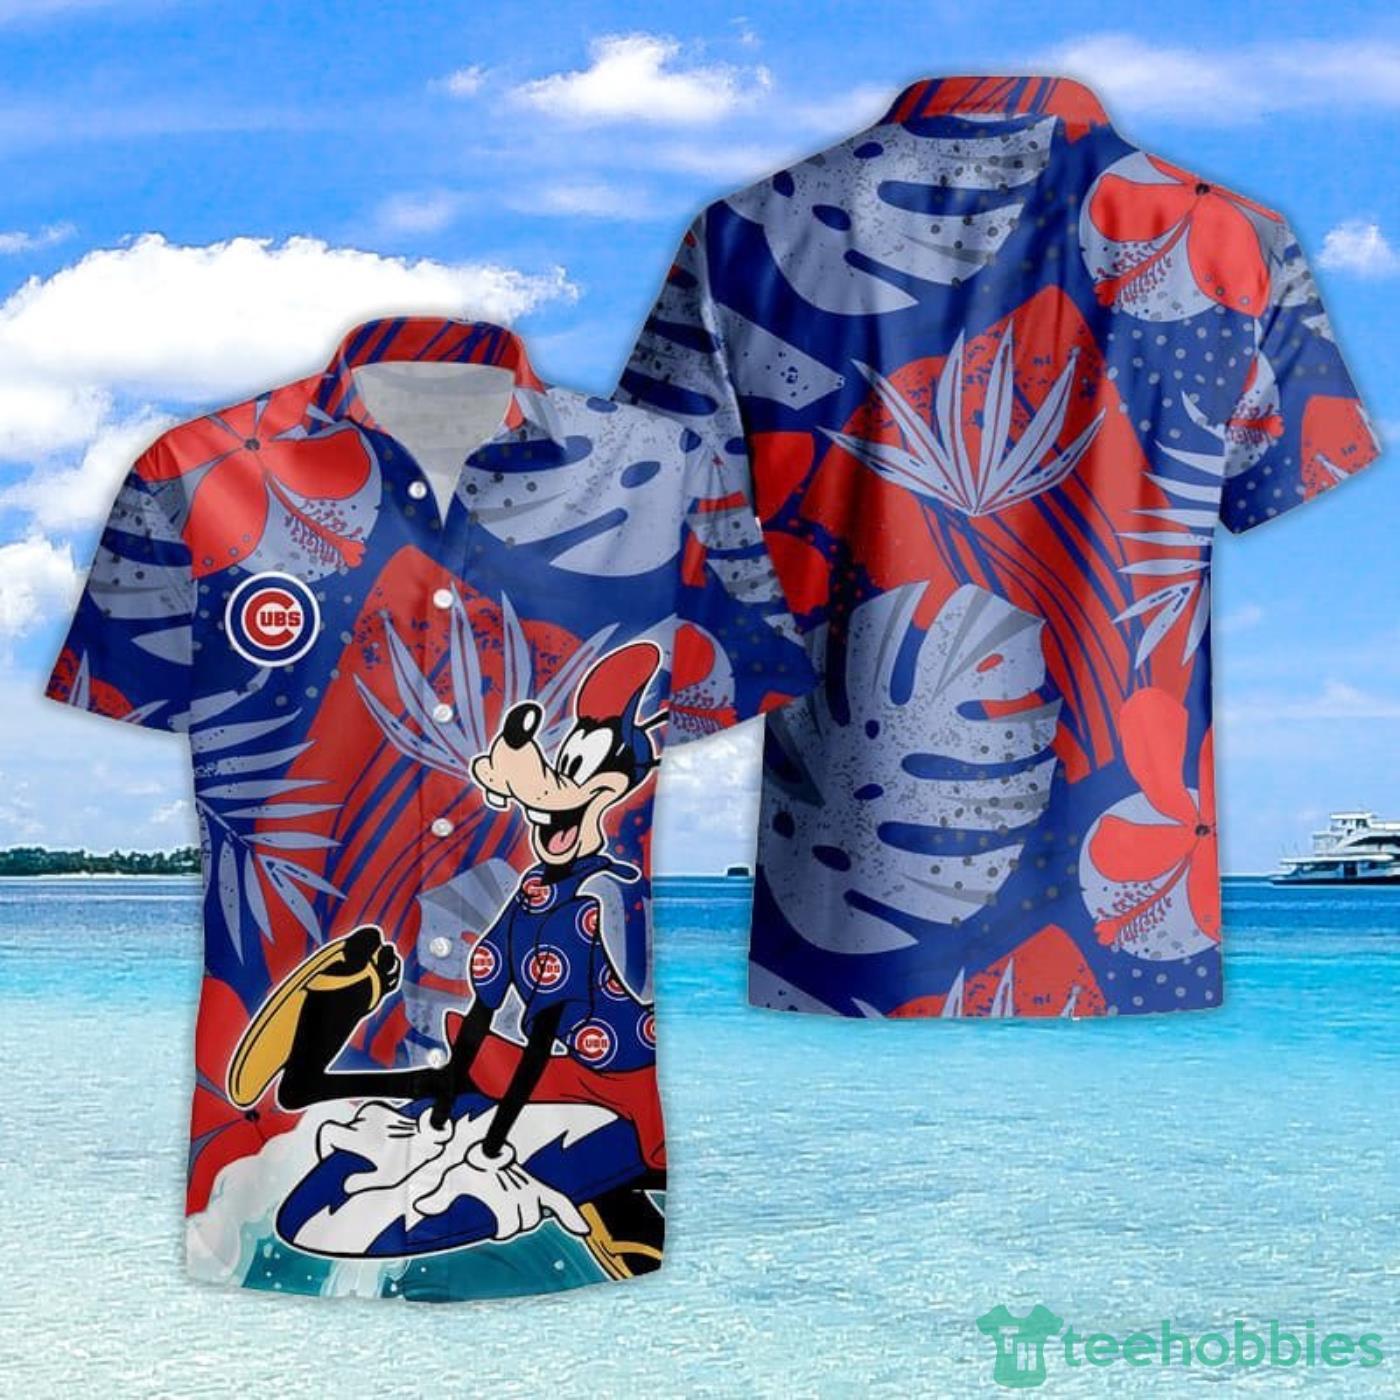 Chicago Cubs Hawaiian Shirt For Men Women - T-shirts Low Price